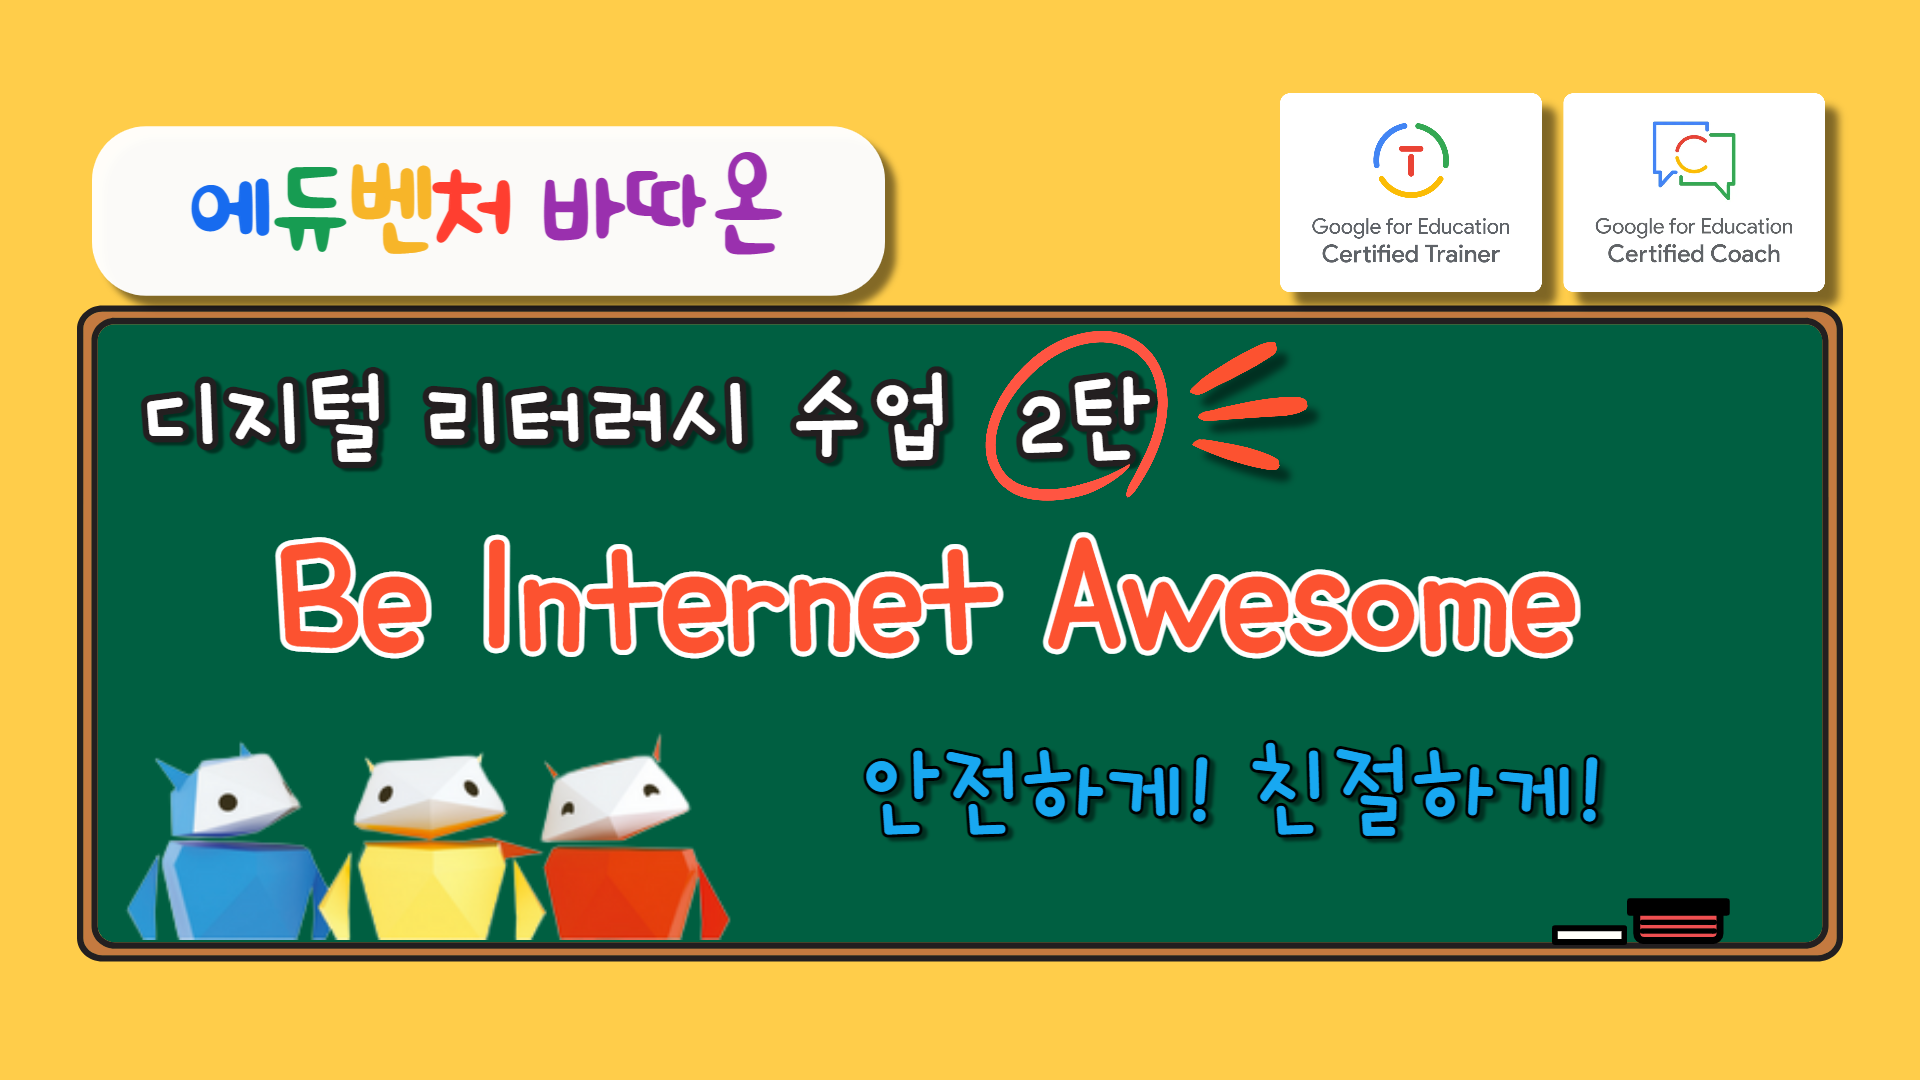 디지털 리터러시 수업 2탄 Be Internet Awesome(안전하게!친절하게!)